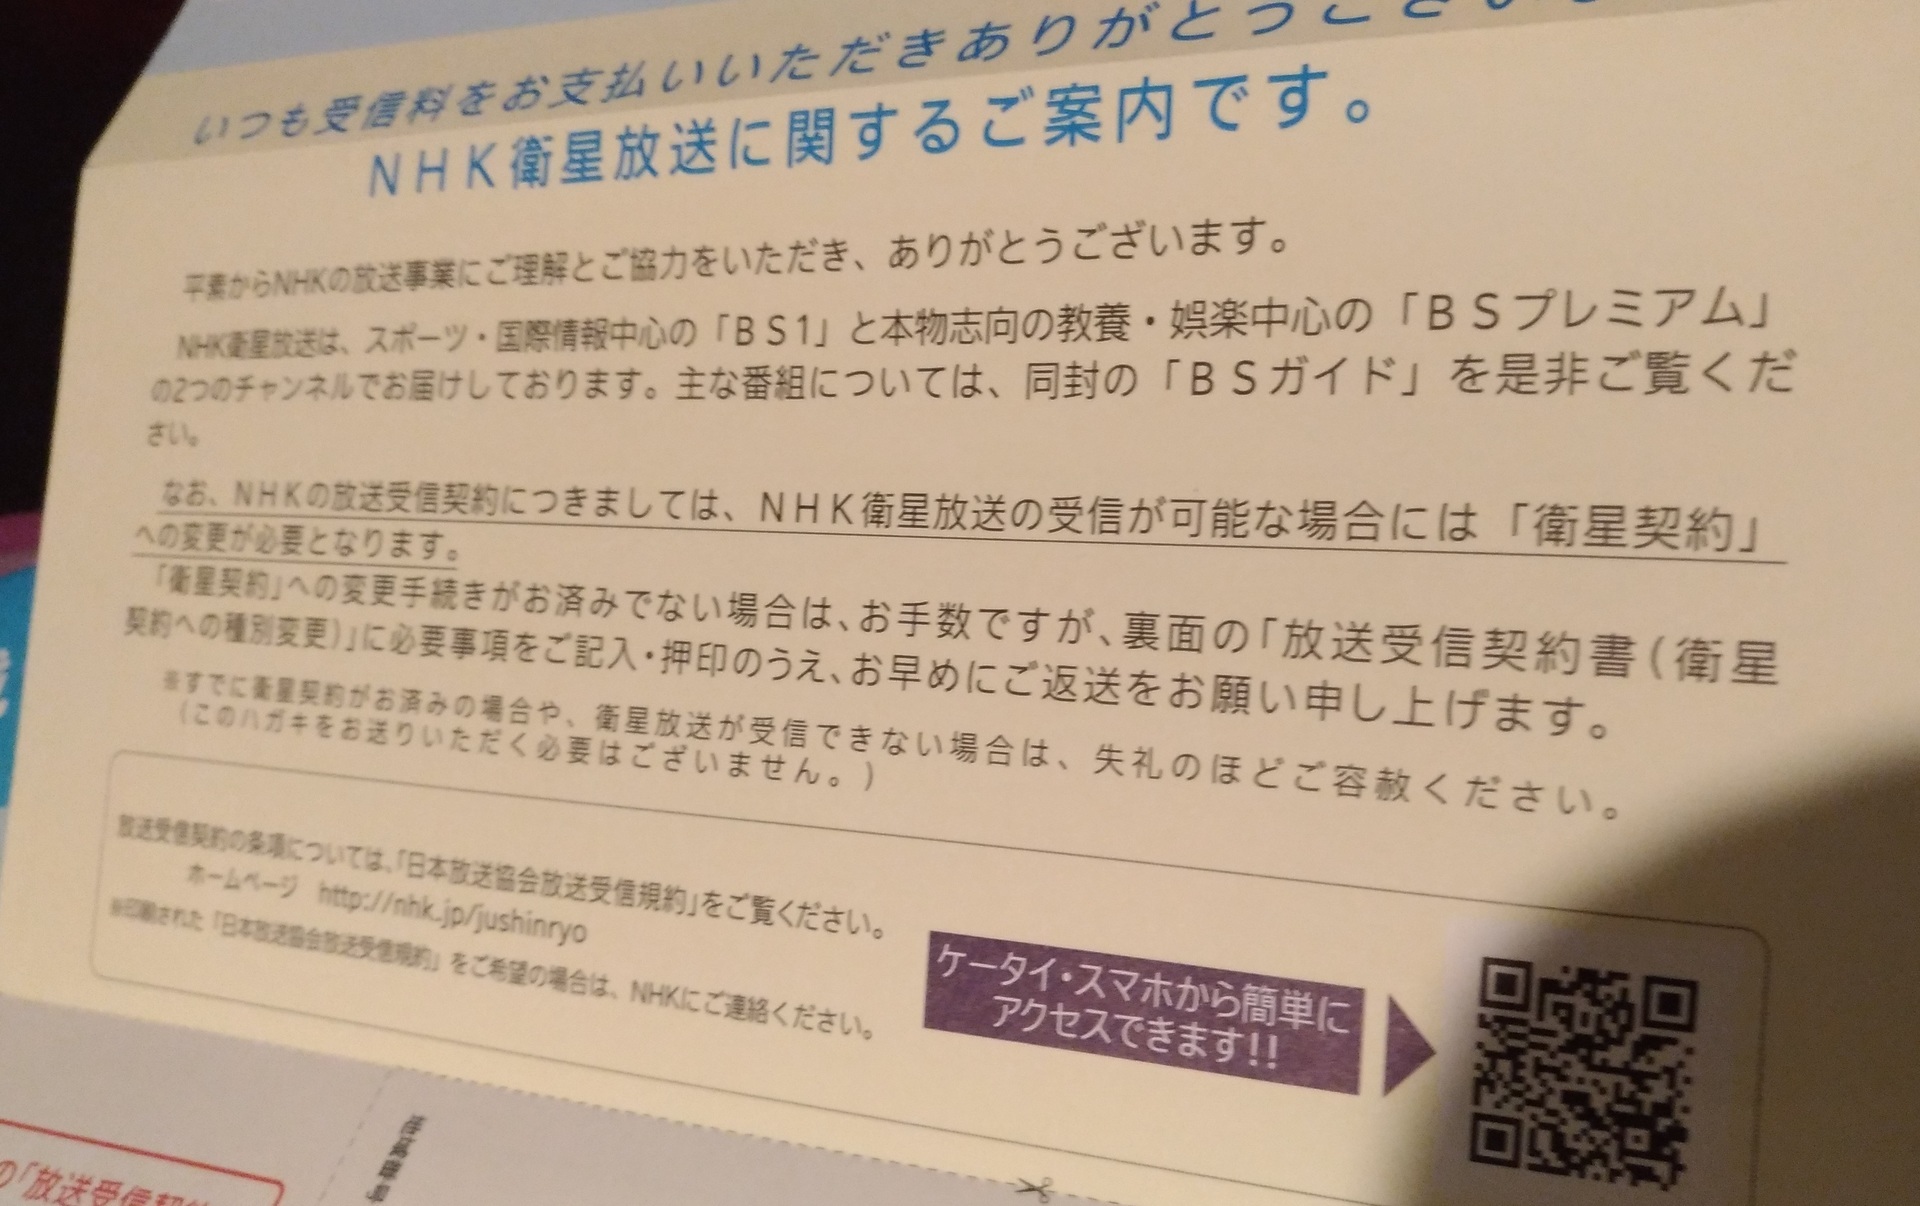 Nhk衛星放送受信契約書 なぜ 受信契約書在中の封筒が送られて Zenfone 2 Laserカメラ スマホで写真 スクリーンショットブログ